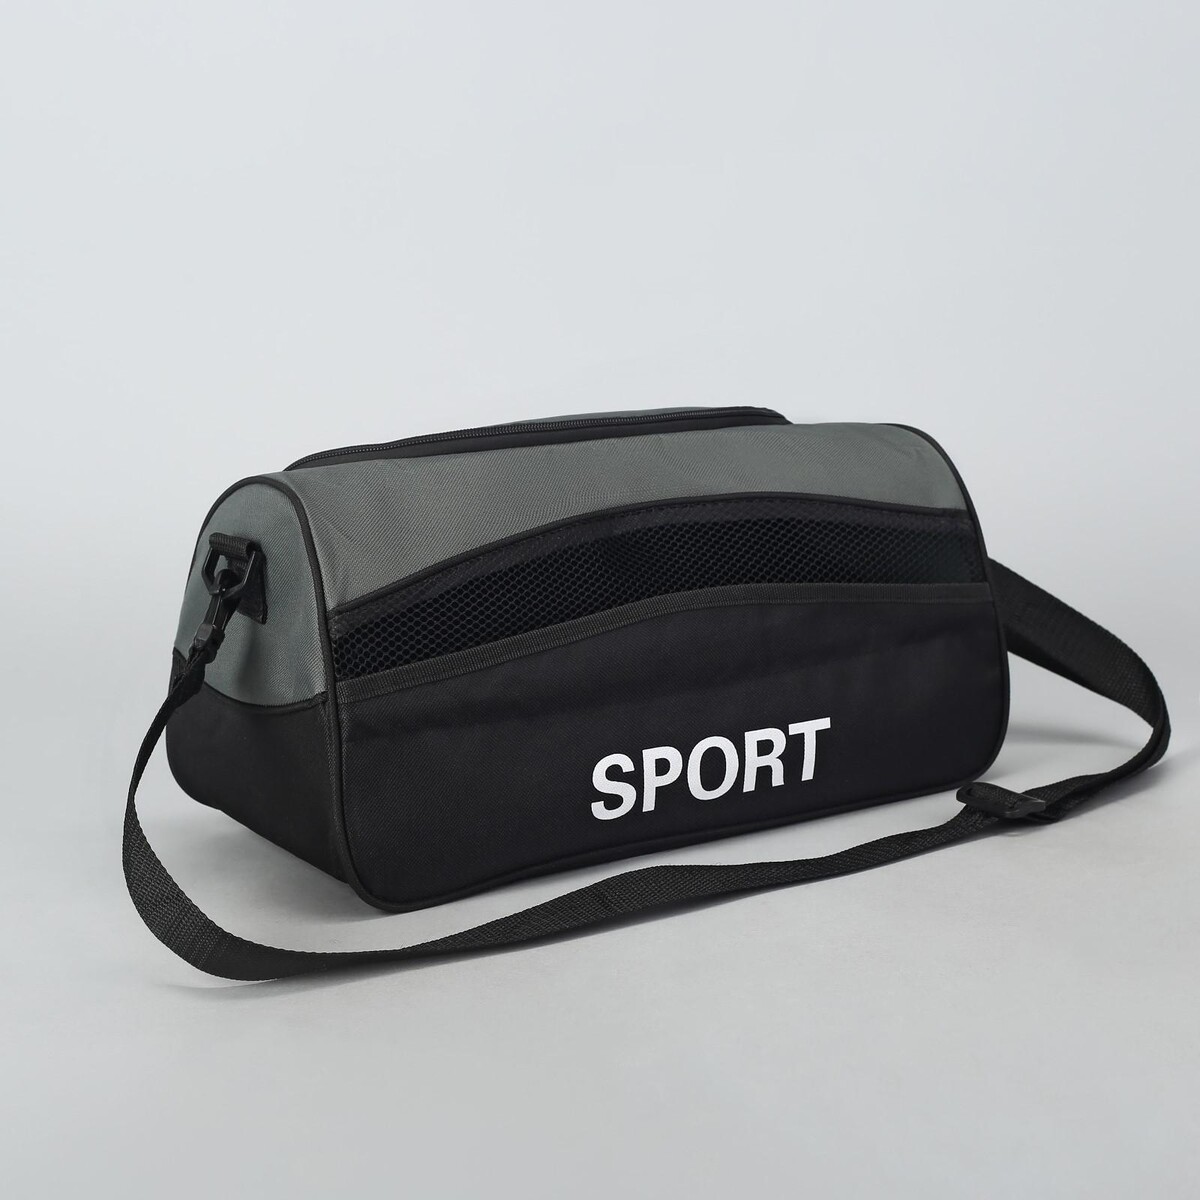 Сумка спортивная на молнии, наружный карман, длинный ремень, цвет черный/серый